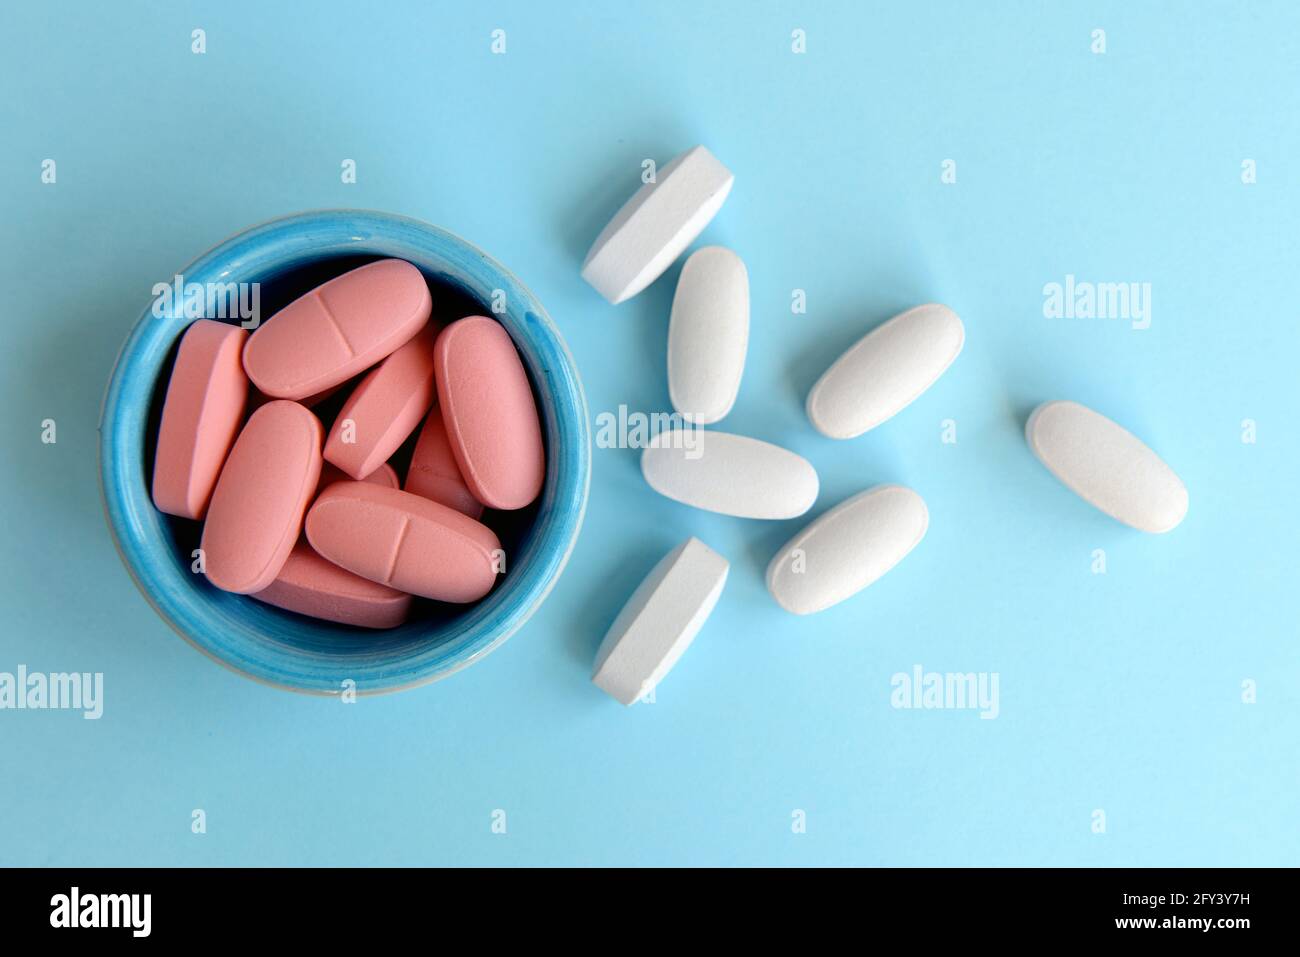 Concetto medico / sanitario: Alcune capsule mediche colorate Foto Stock